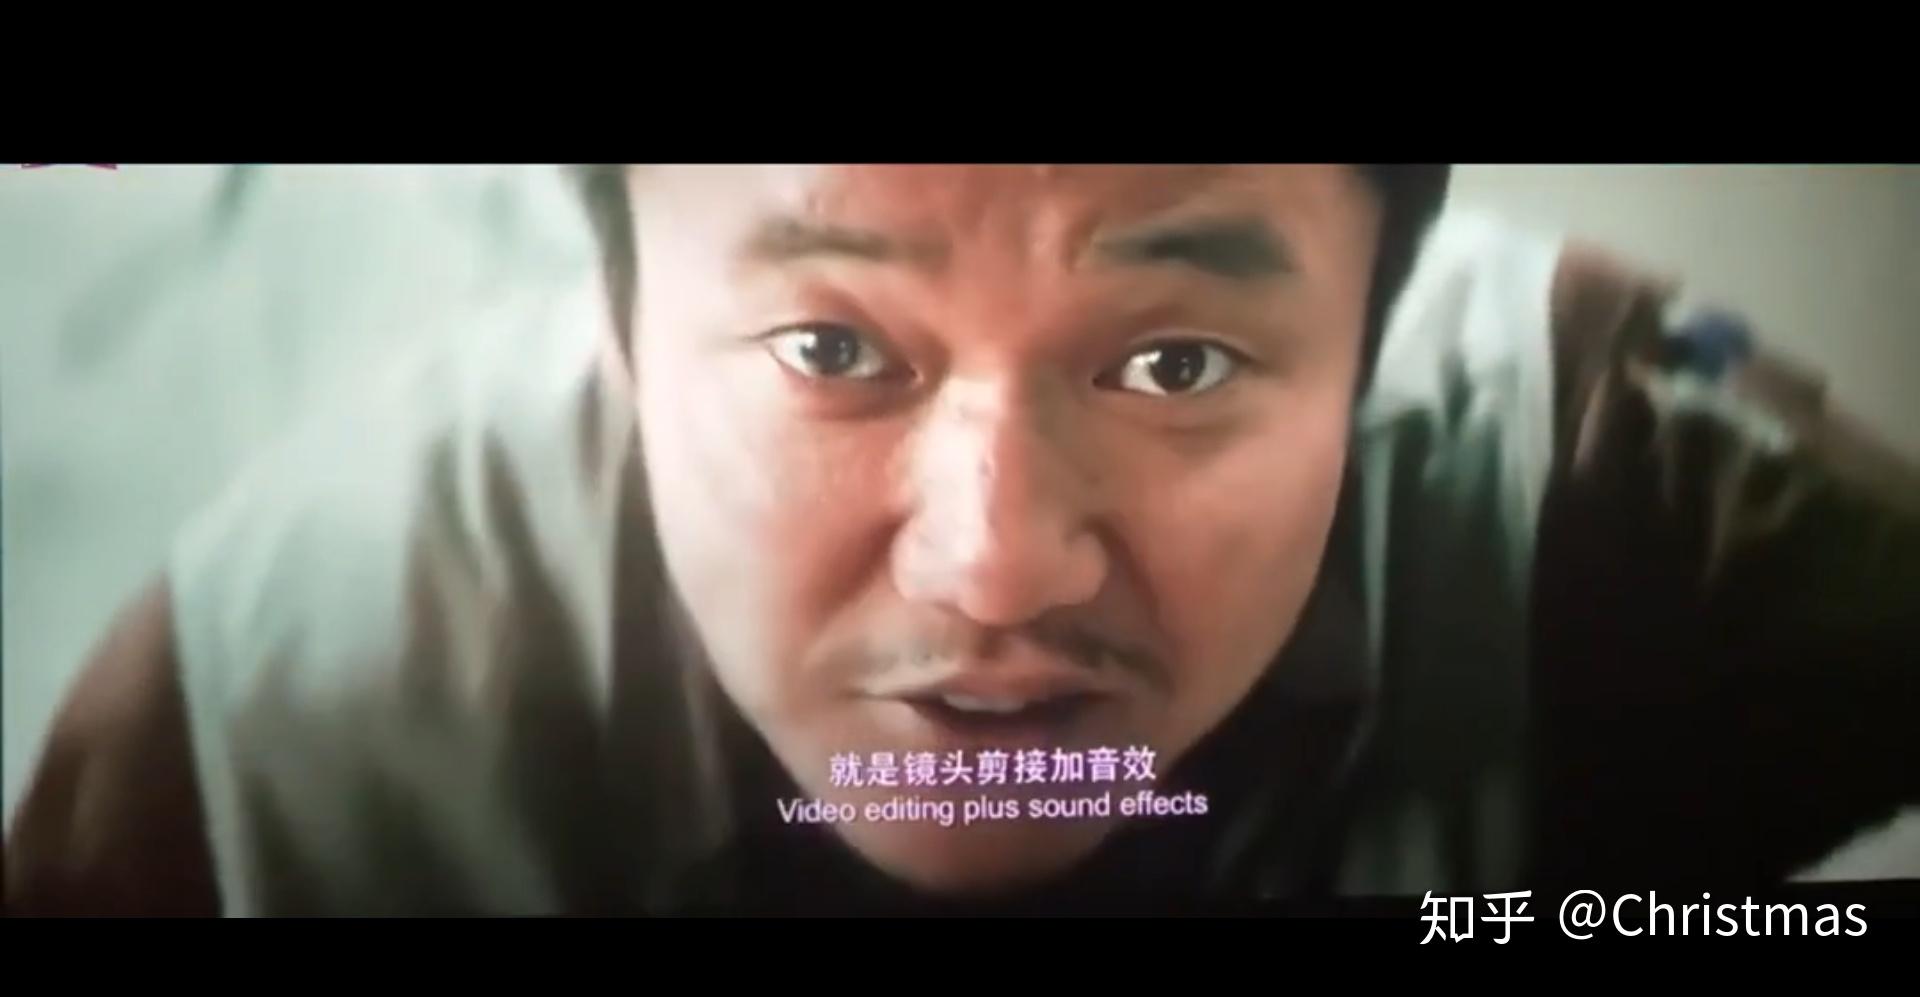 《误杀2》曝人物海报“绝望父亲”肖央演绎年度硬核犯罪电影 - 楠木轩